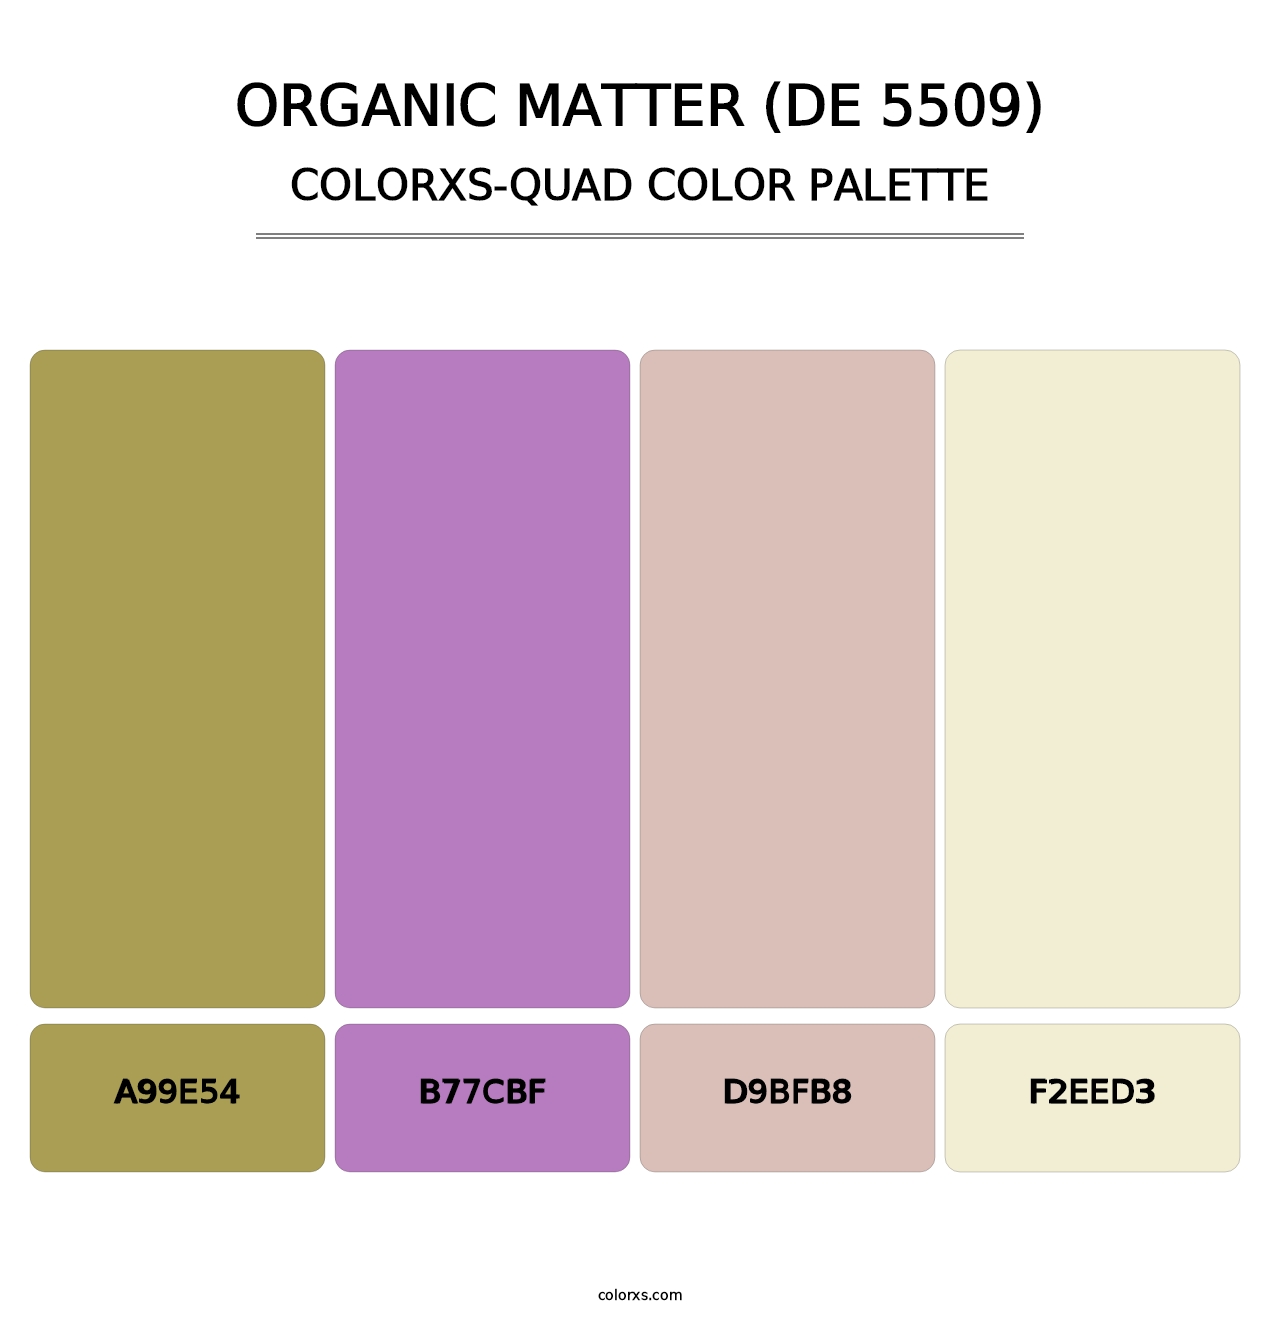 Organic Matter (DE 5509) - Colorxs Quad Palette